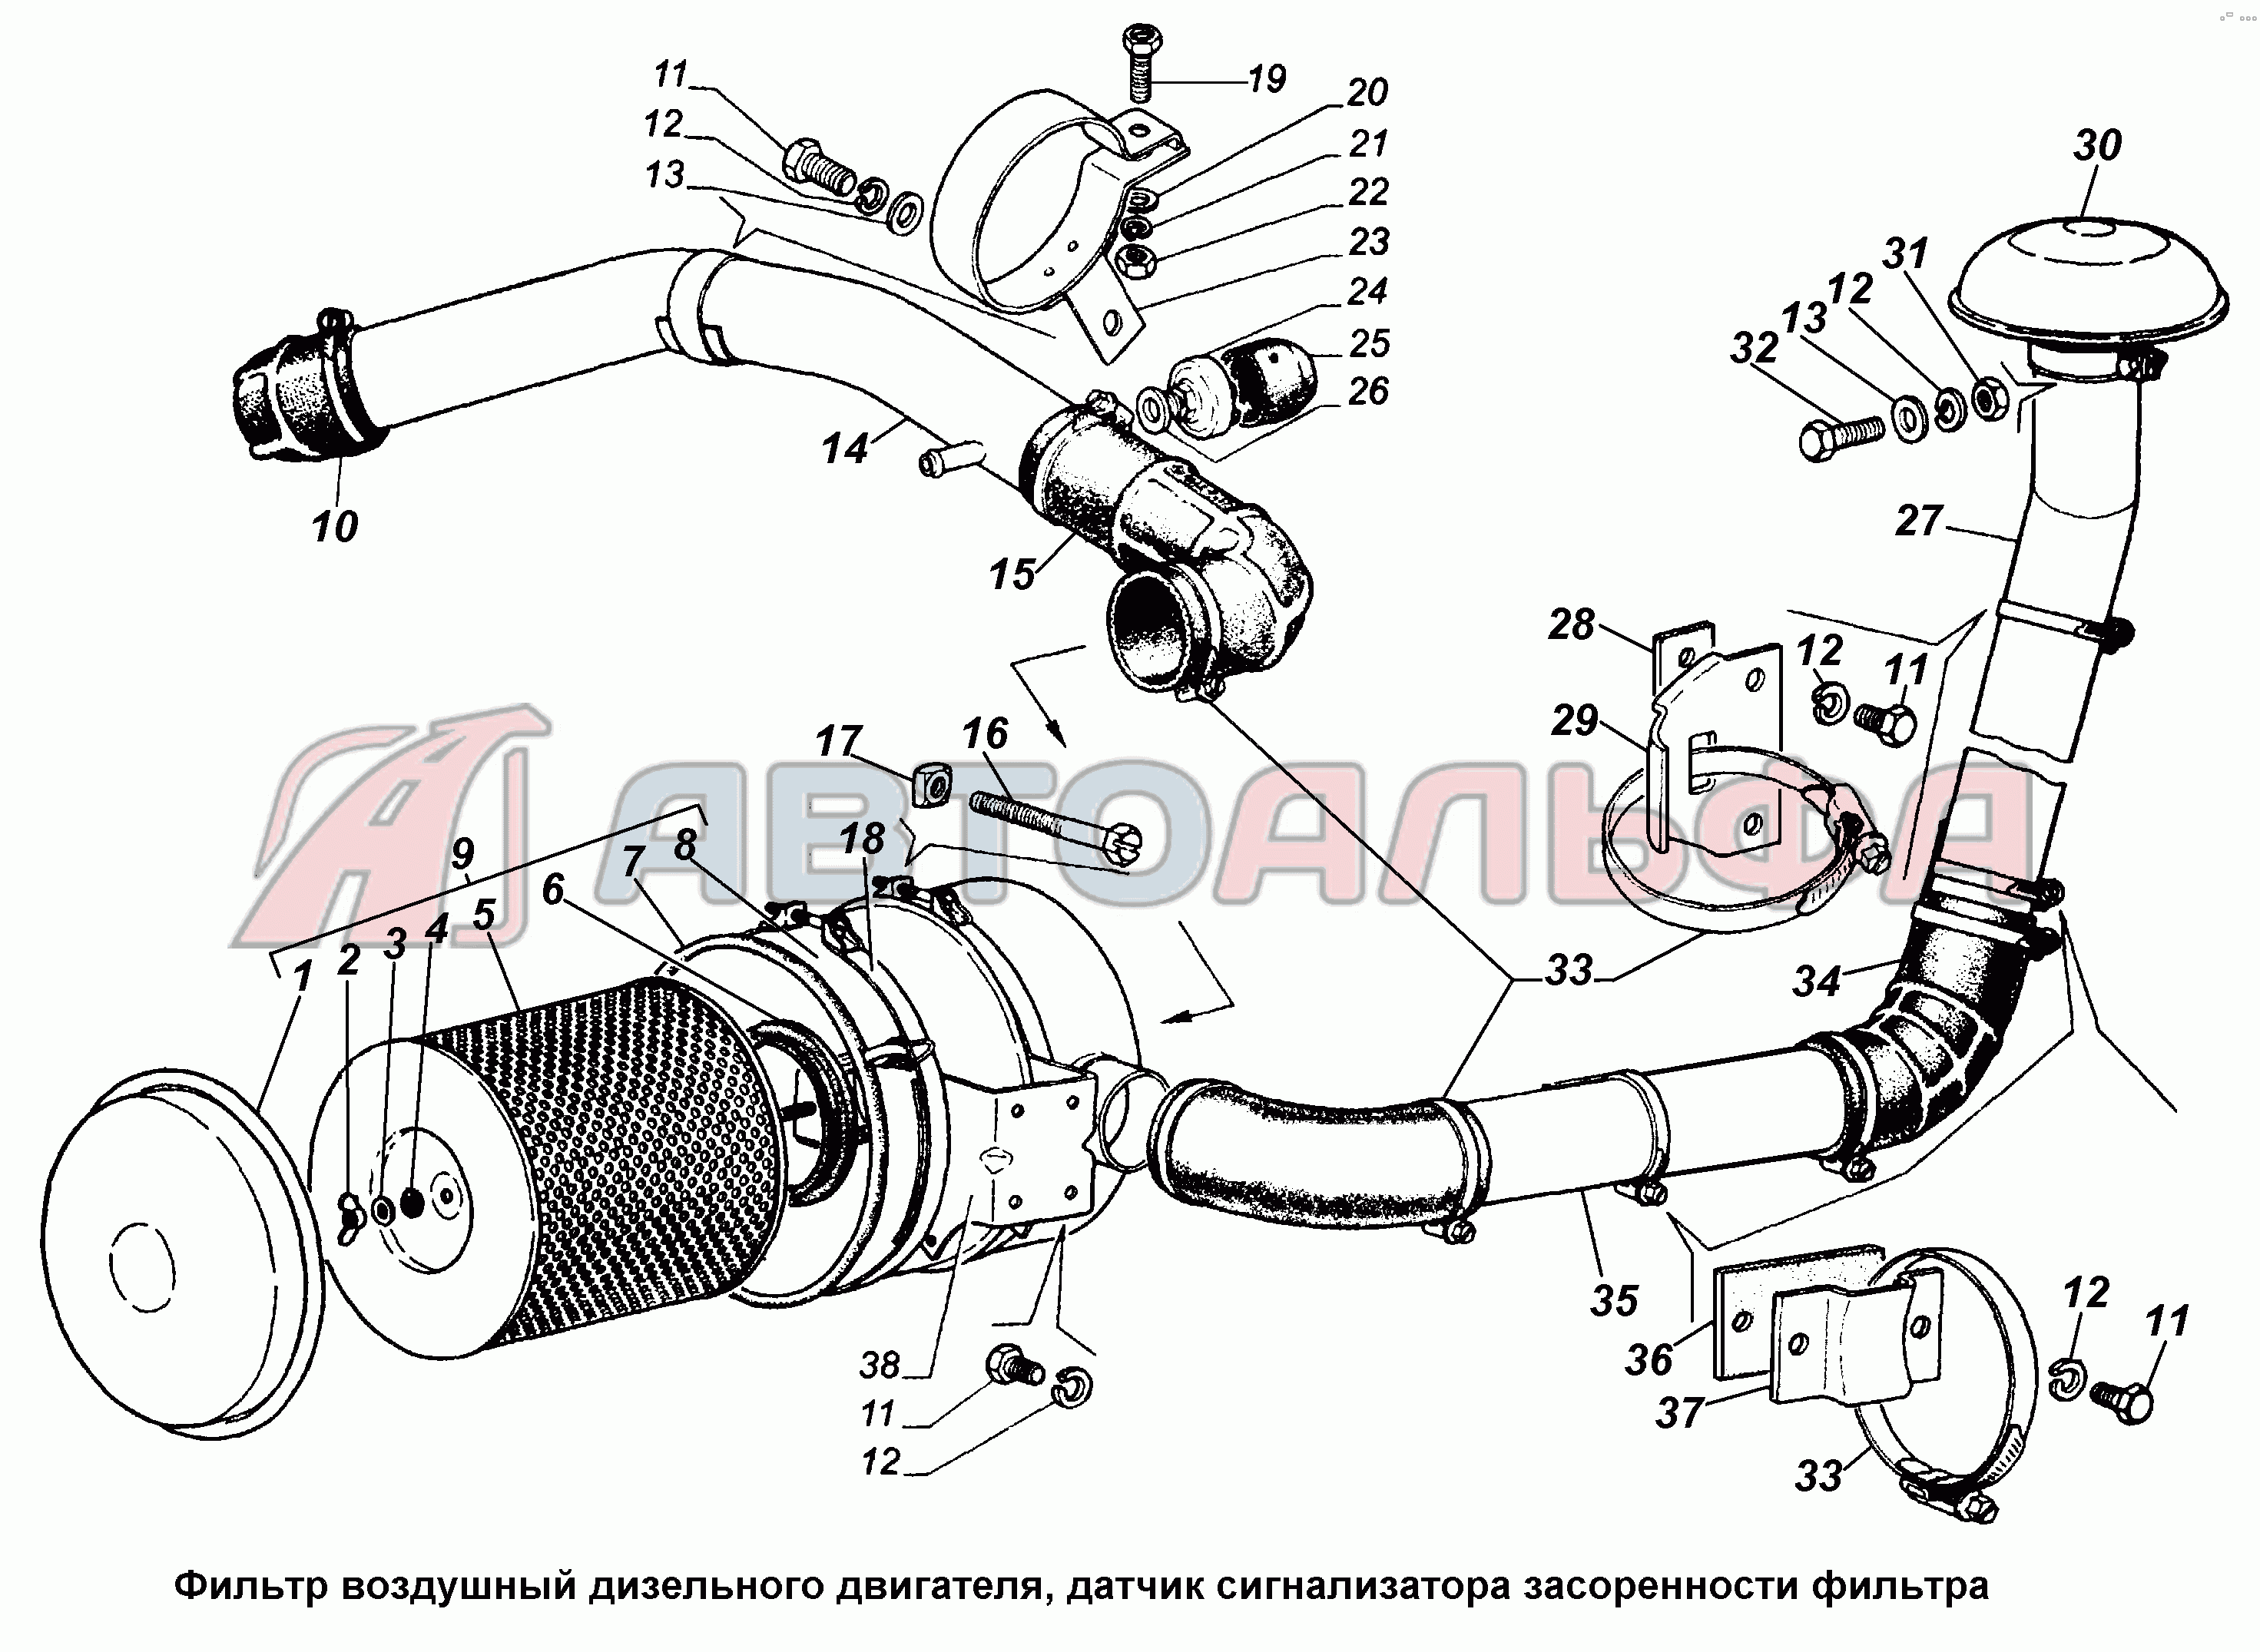 Фильтр воздушный дизельного двигателя ГАЗ 3308, каталог 2002 г.